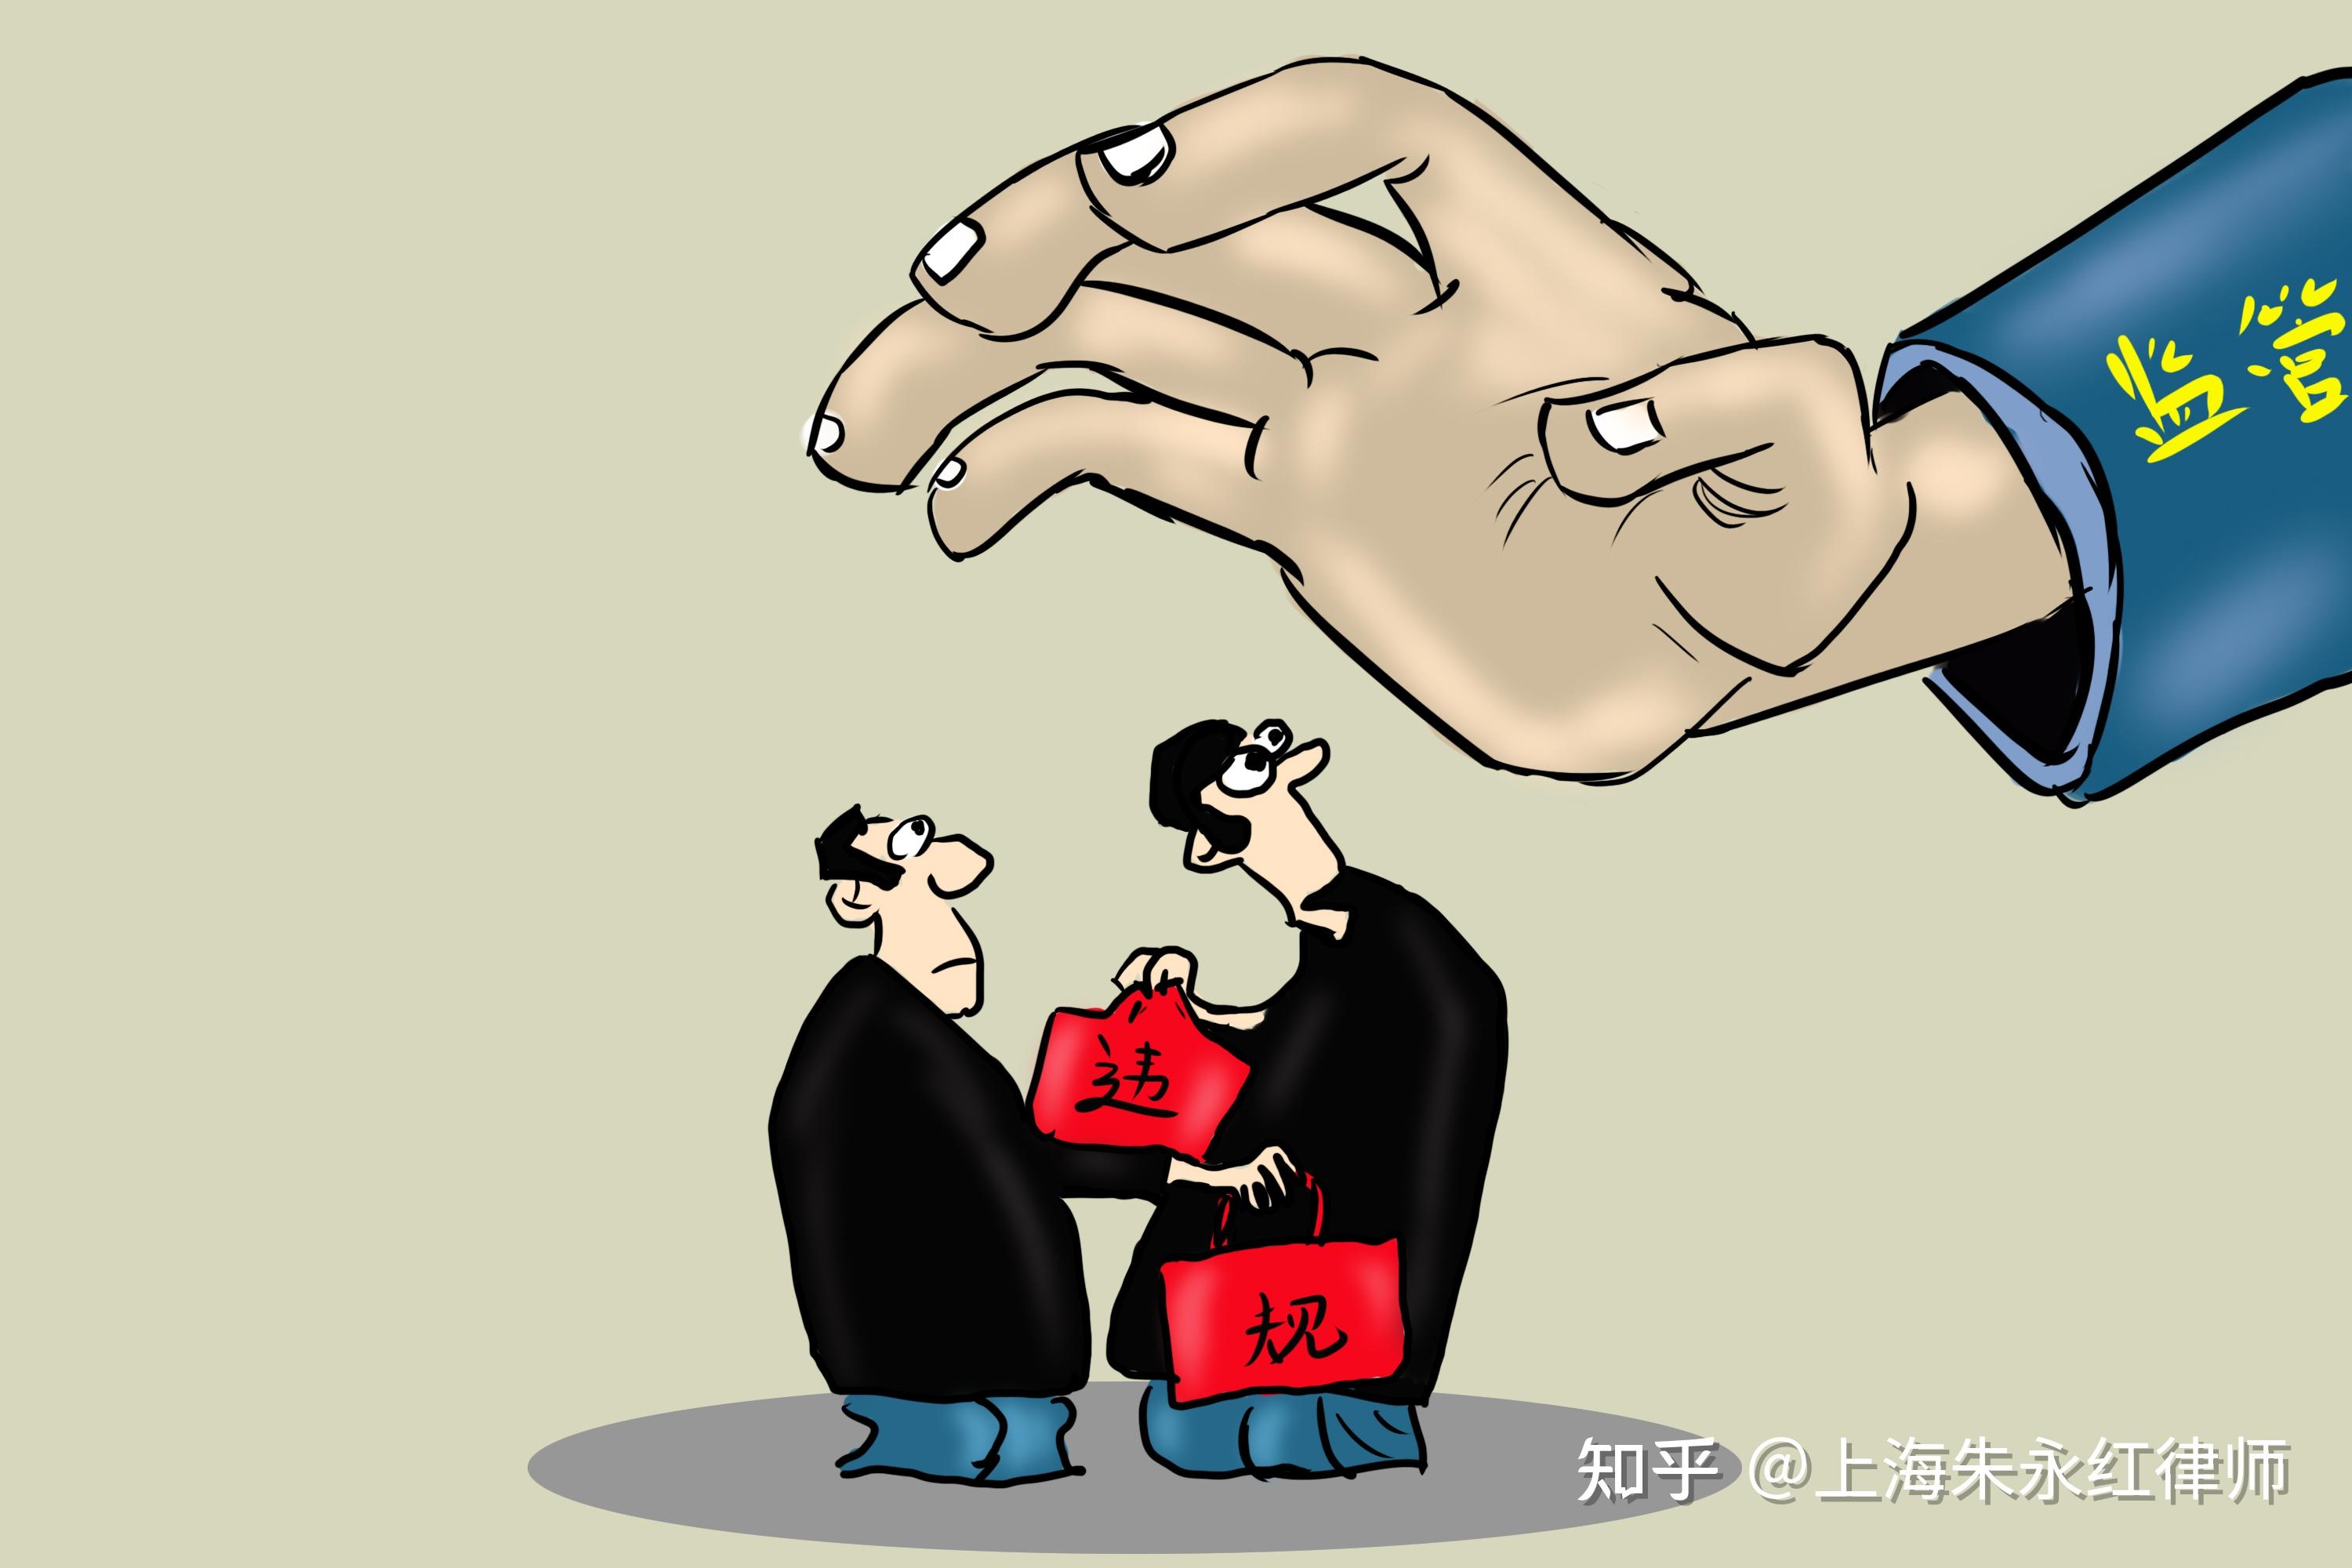 上海家宝医学保健科技有限公司违反广告法被罚-中国质量新闻网